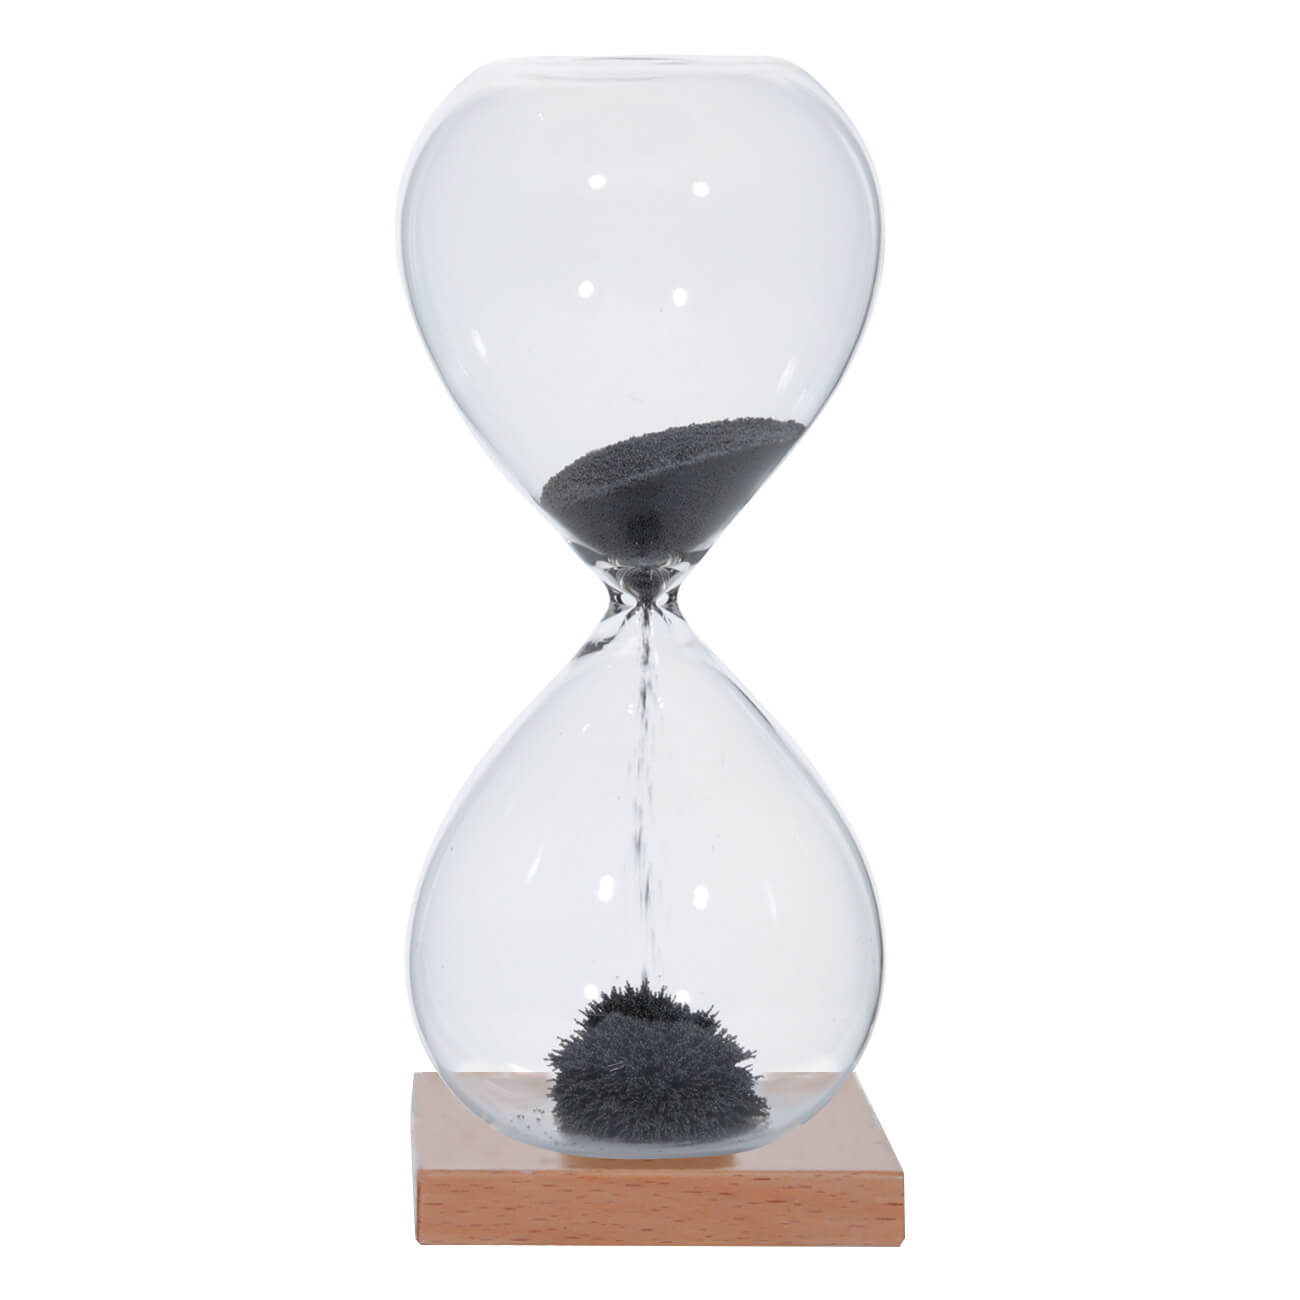 Часы песочные, 16 см, 1 минута, магнитные, на подставке, стекло/дерево, серые, Sand time часы метеостанция oxion otm1560 с беспроводным датчиком дерево